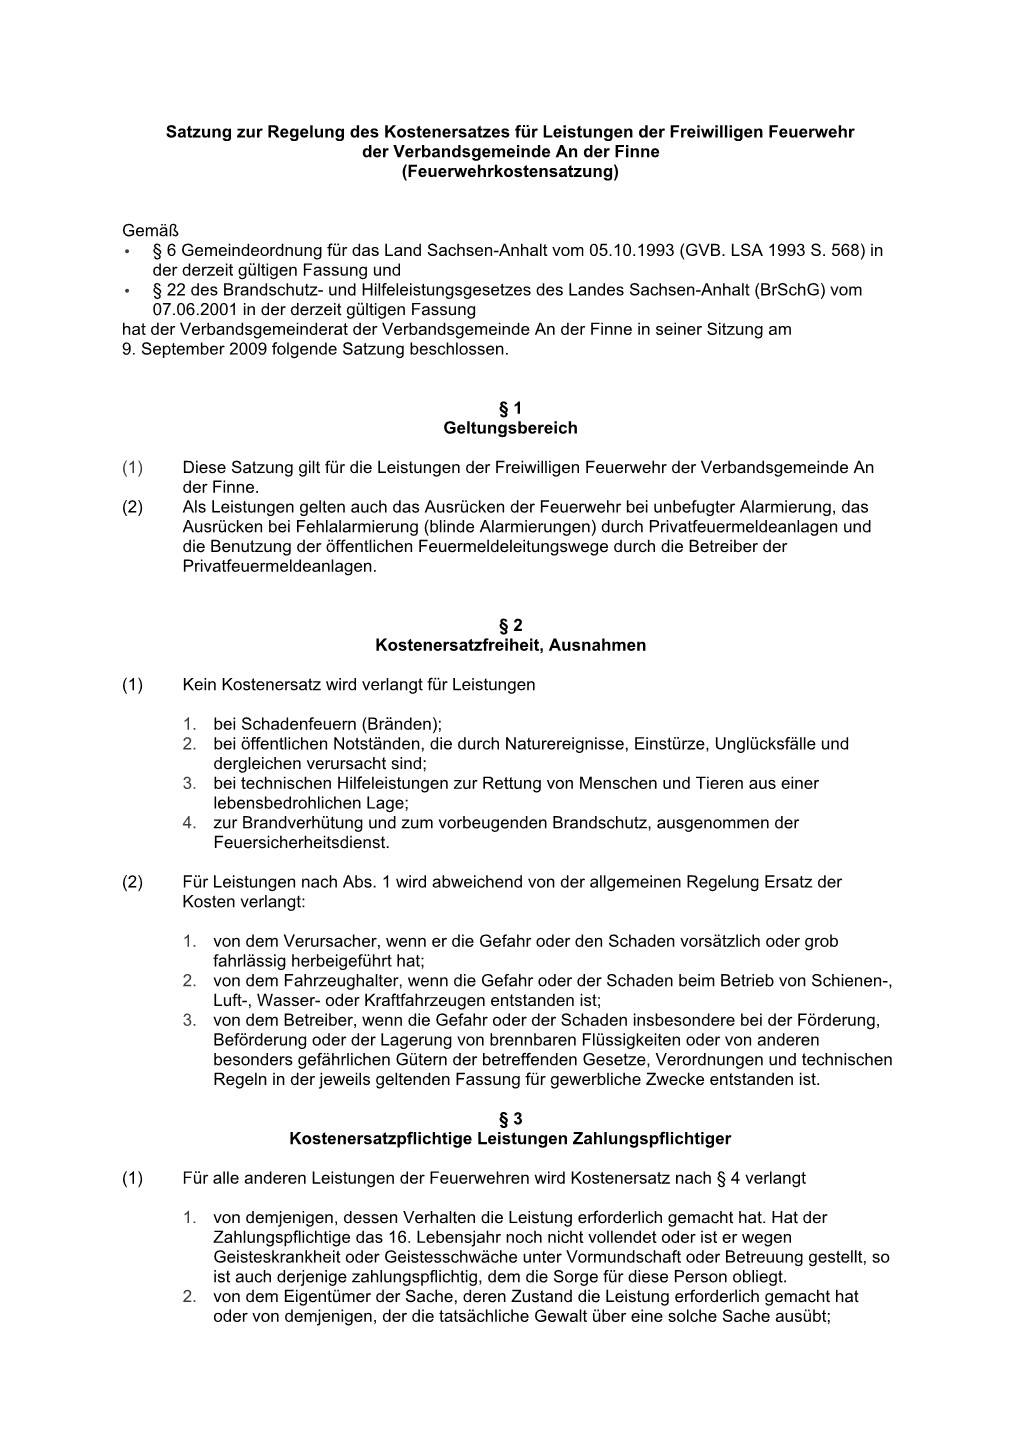 Satzung Zur Regelung Des Kostenersatzes Für Leistungen Der Freiwilligen Feuerwehr Der Verbandsgemeinde an Der Finne (Feuerwehrkostensatzung)